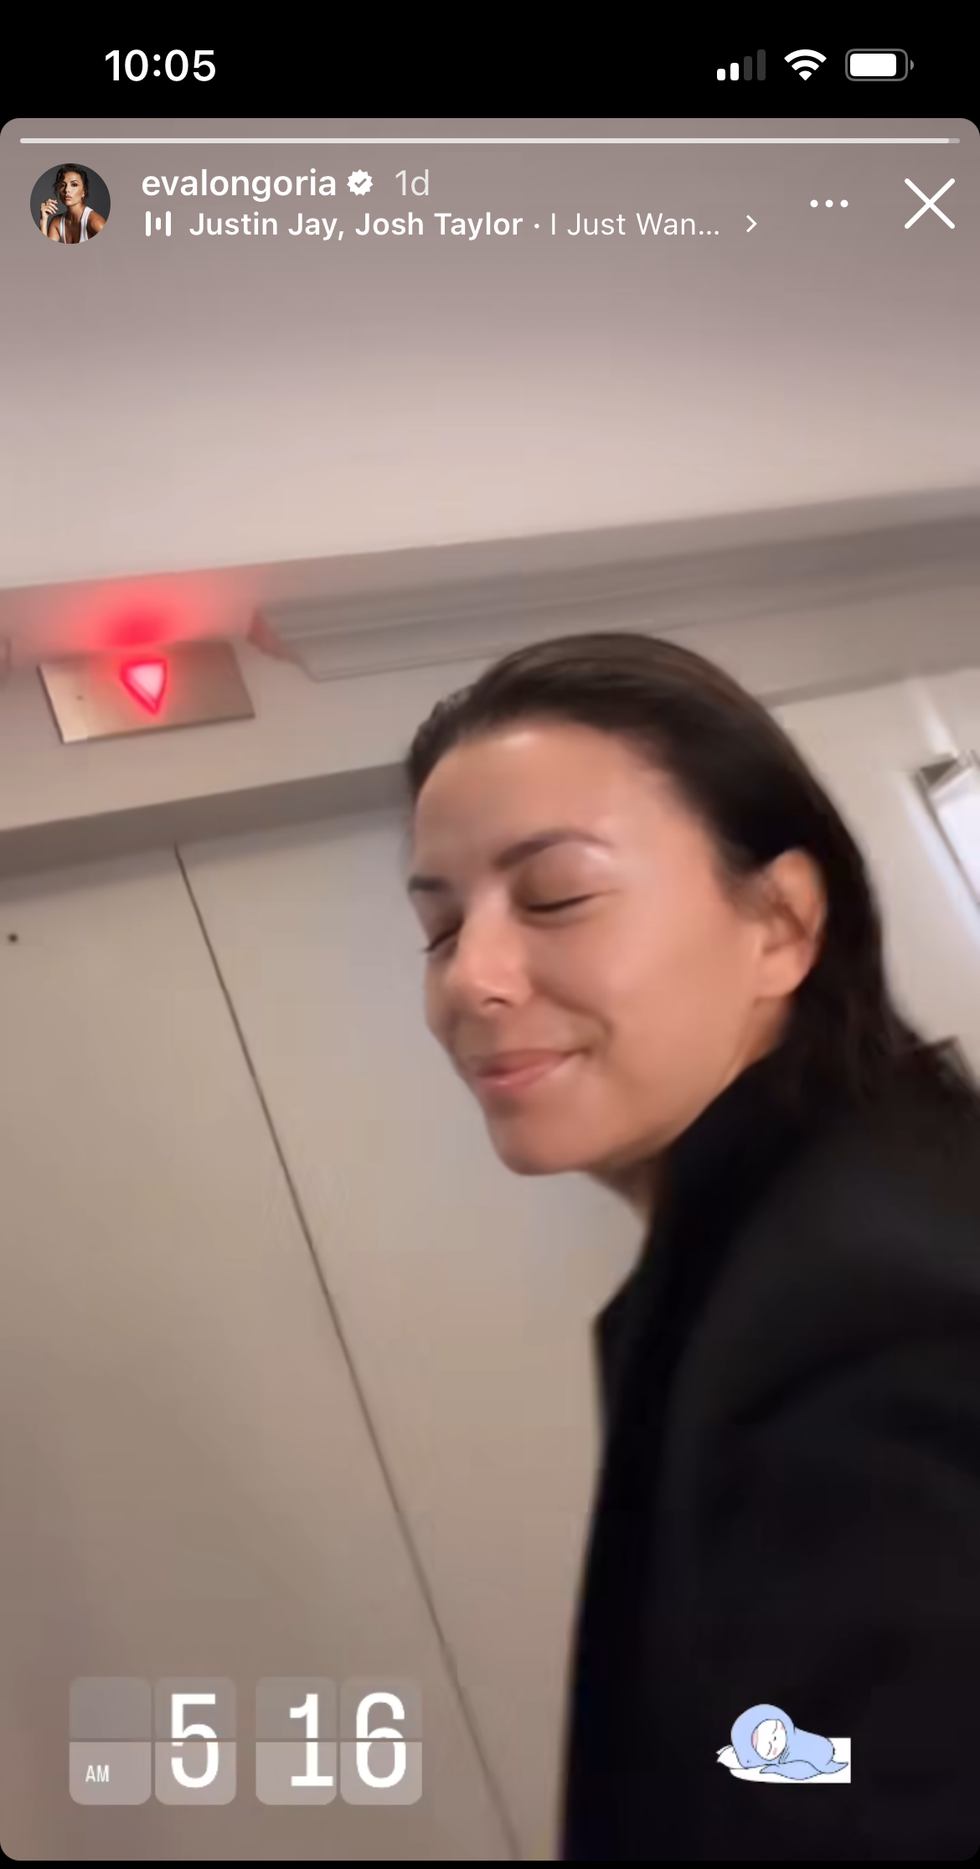 selfie of eva longoria outside of a lift